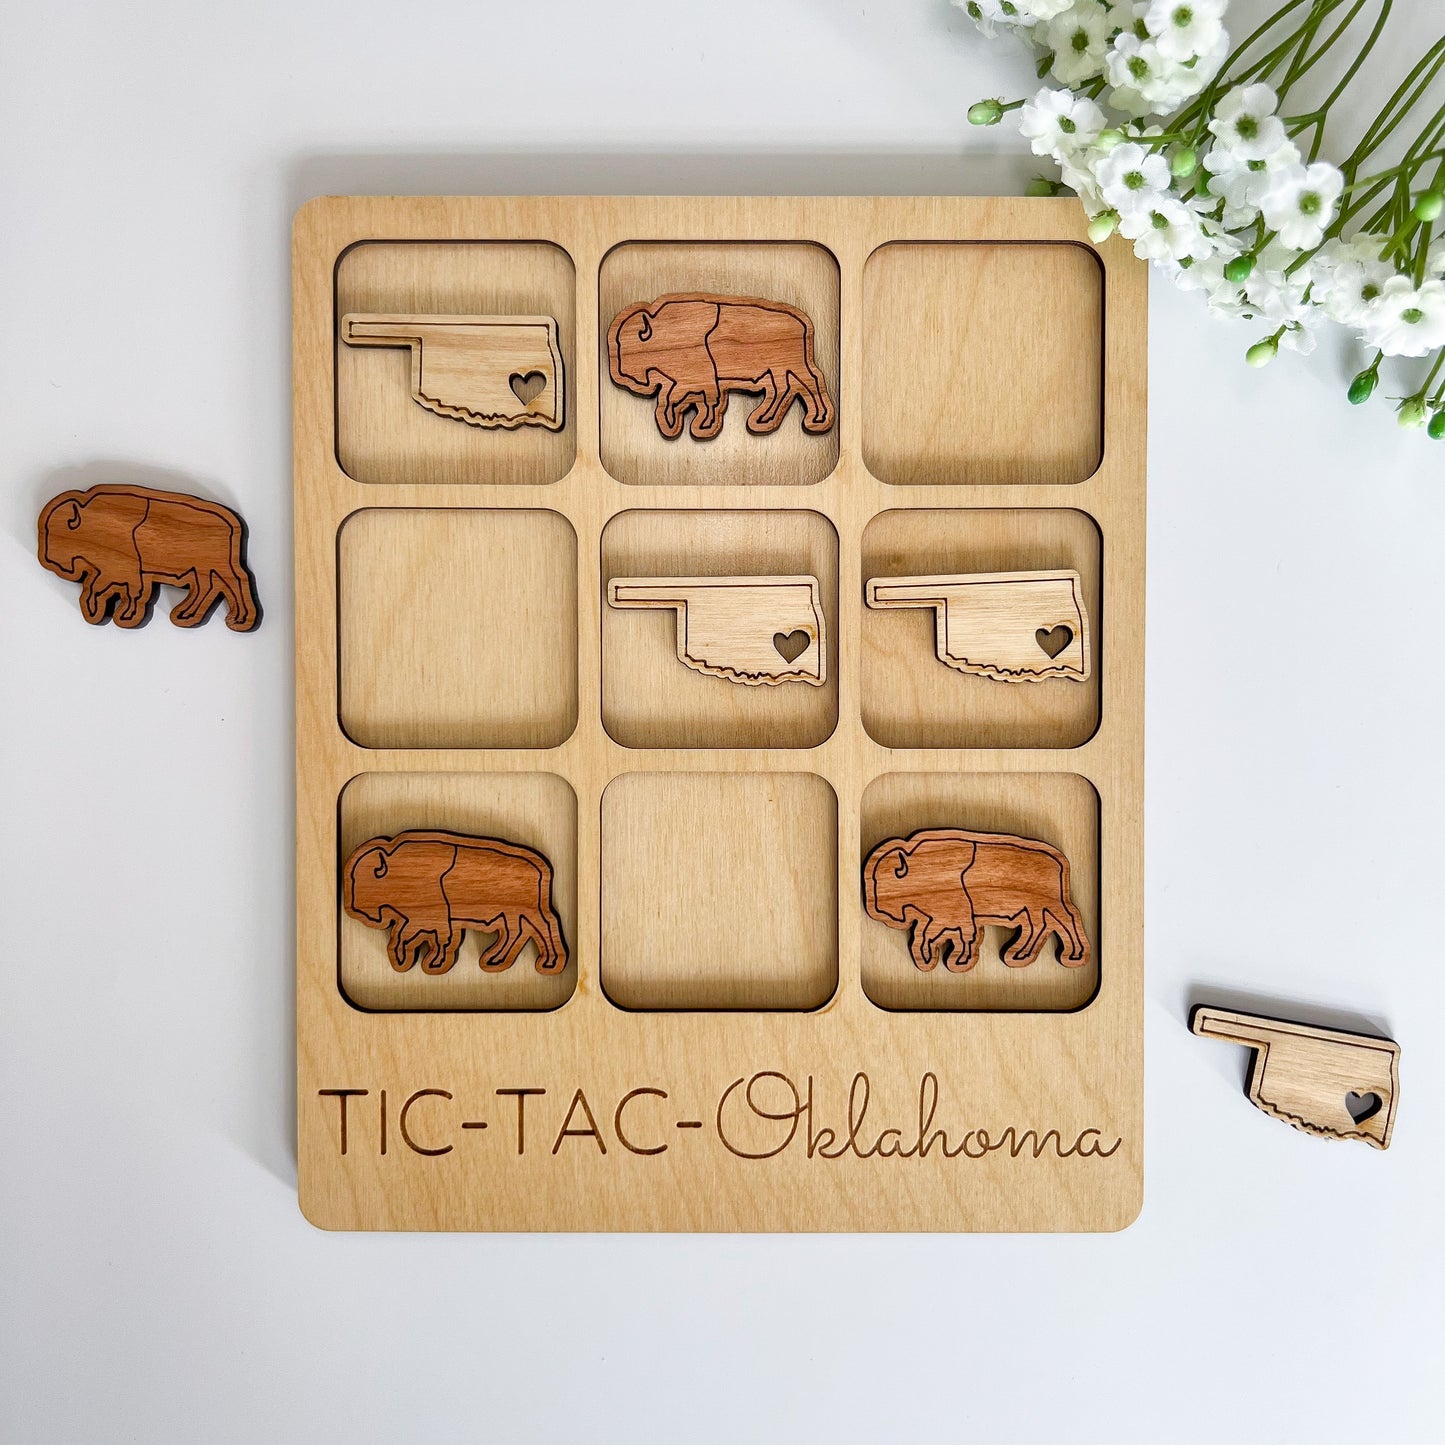 Oklahoma Tic-Tac-Toe Board